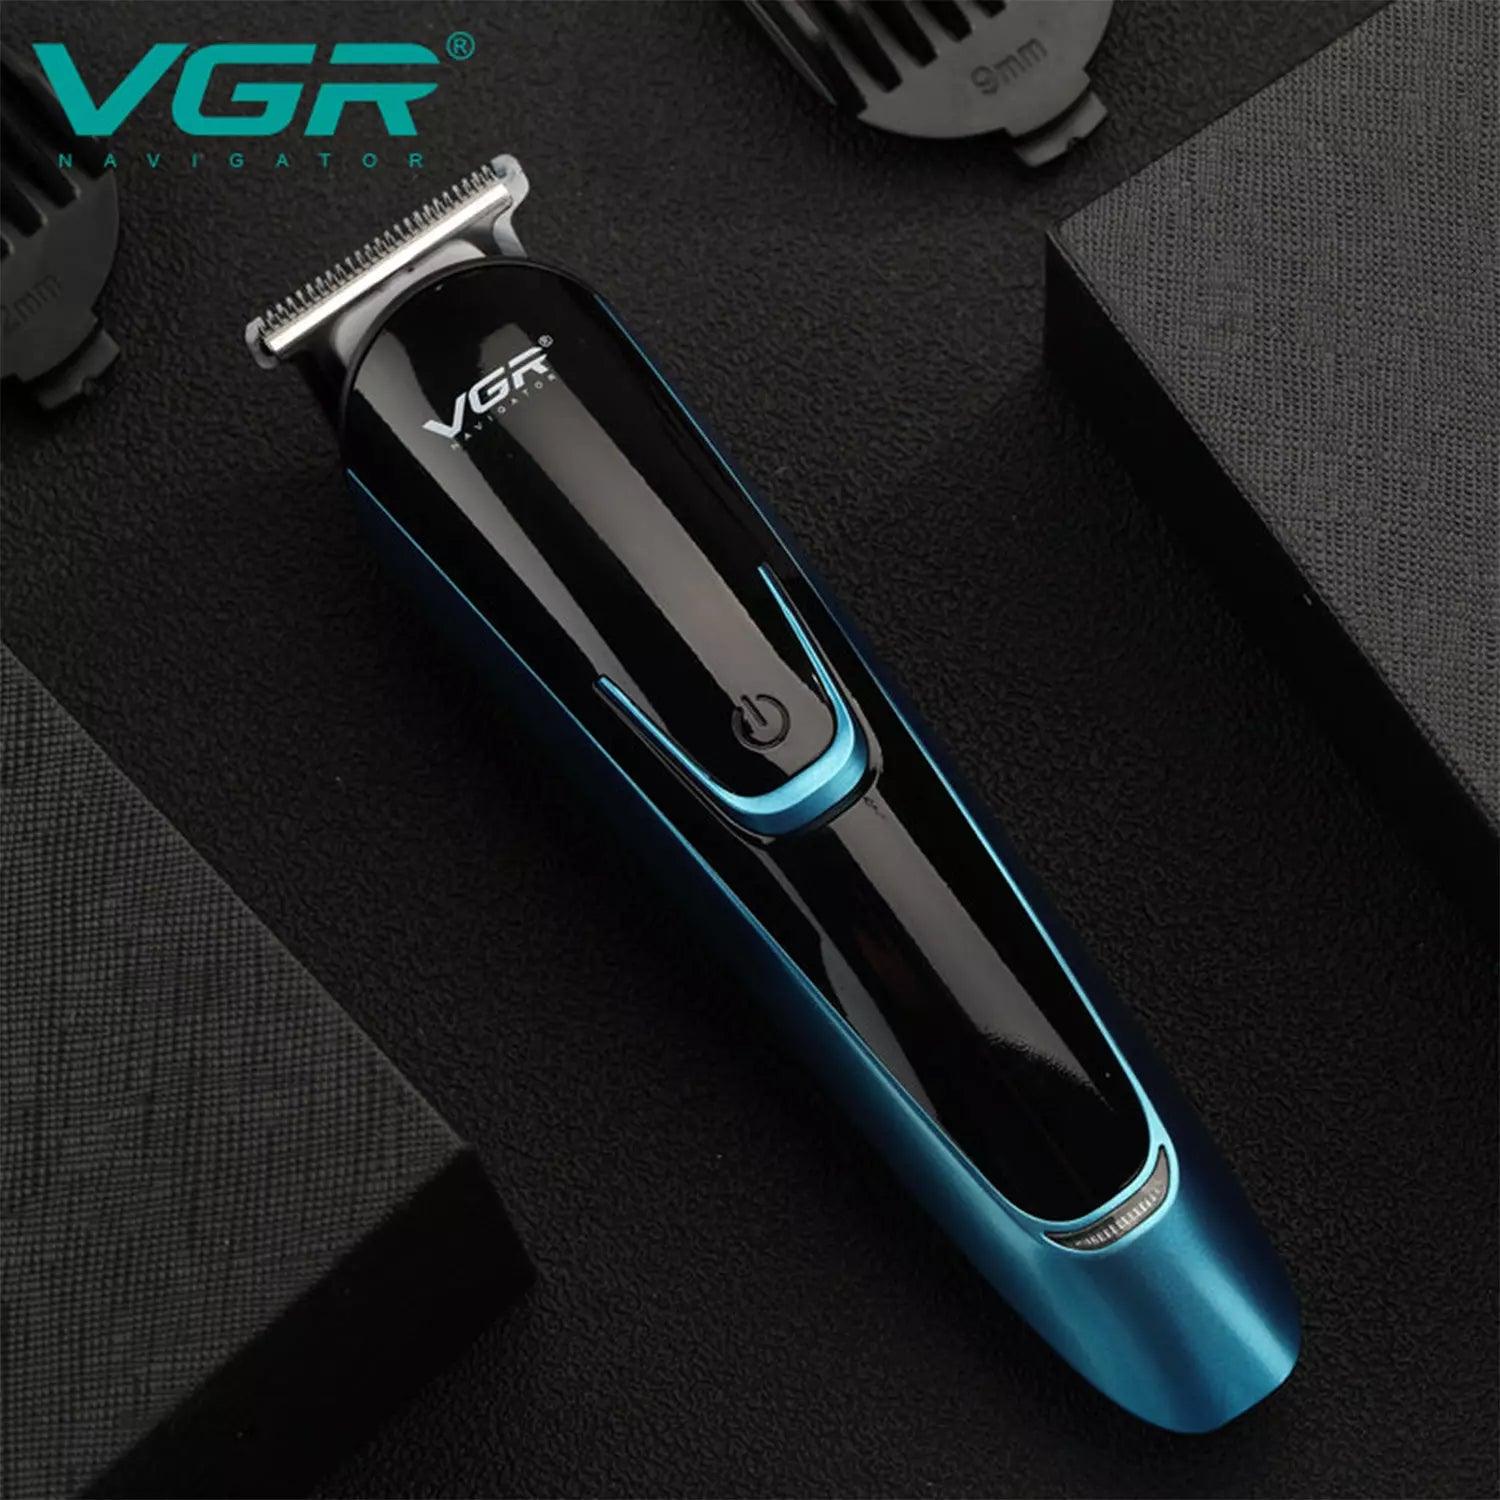 VGR-V-183-Hair-Trimmer-For-Men-Blue